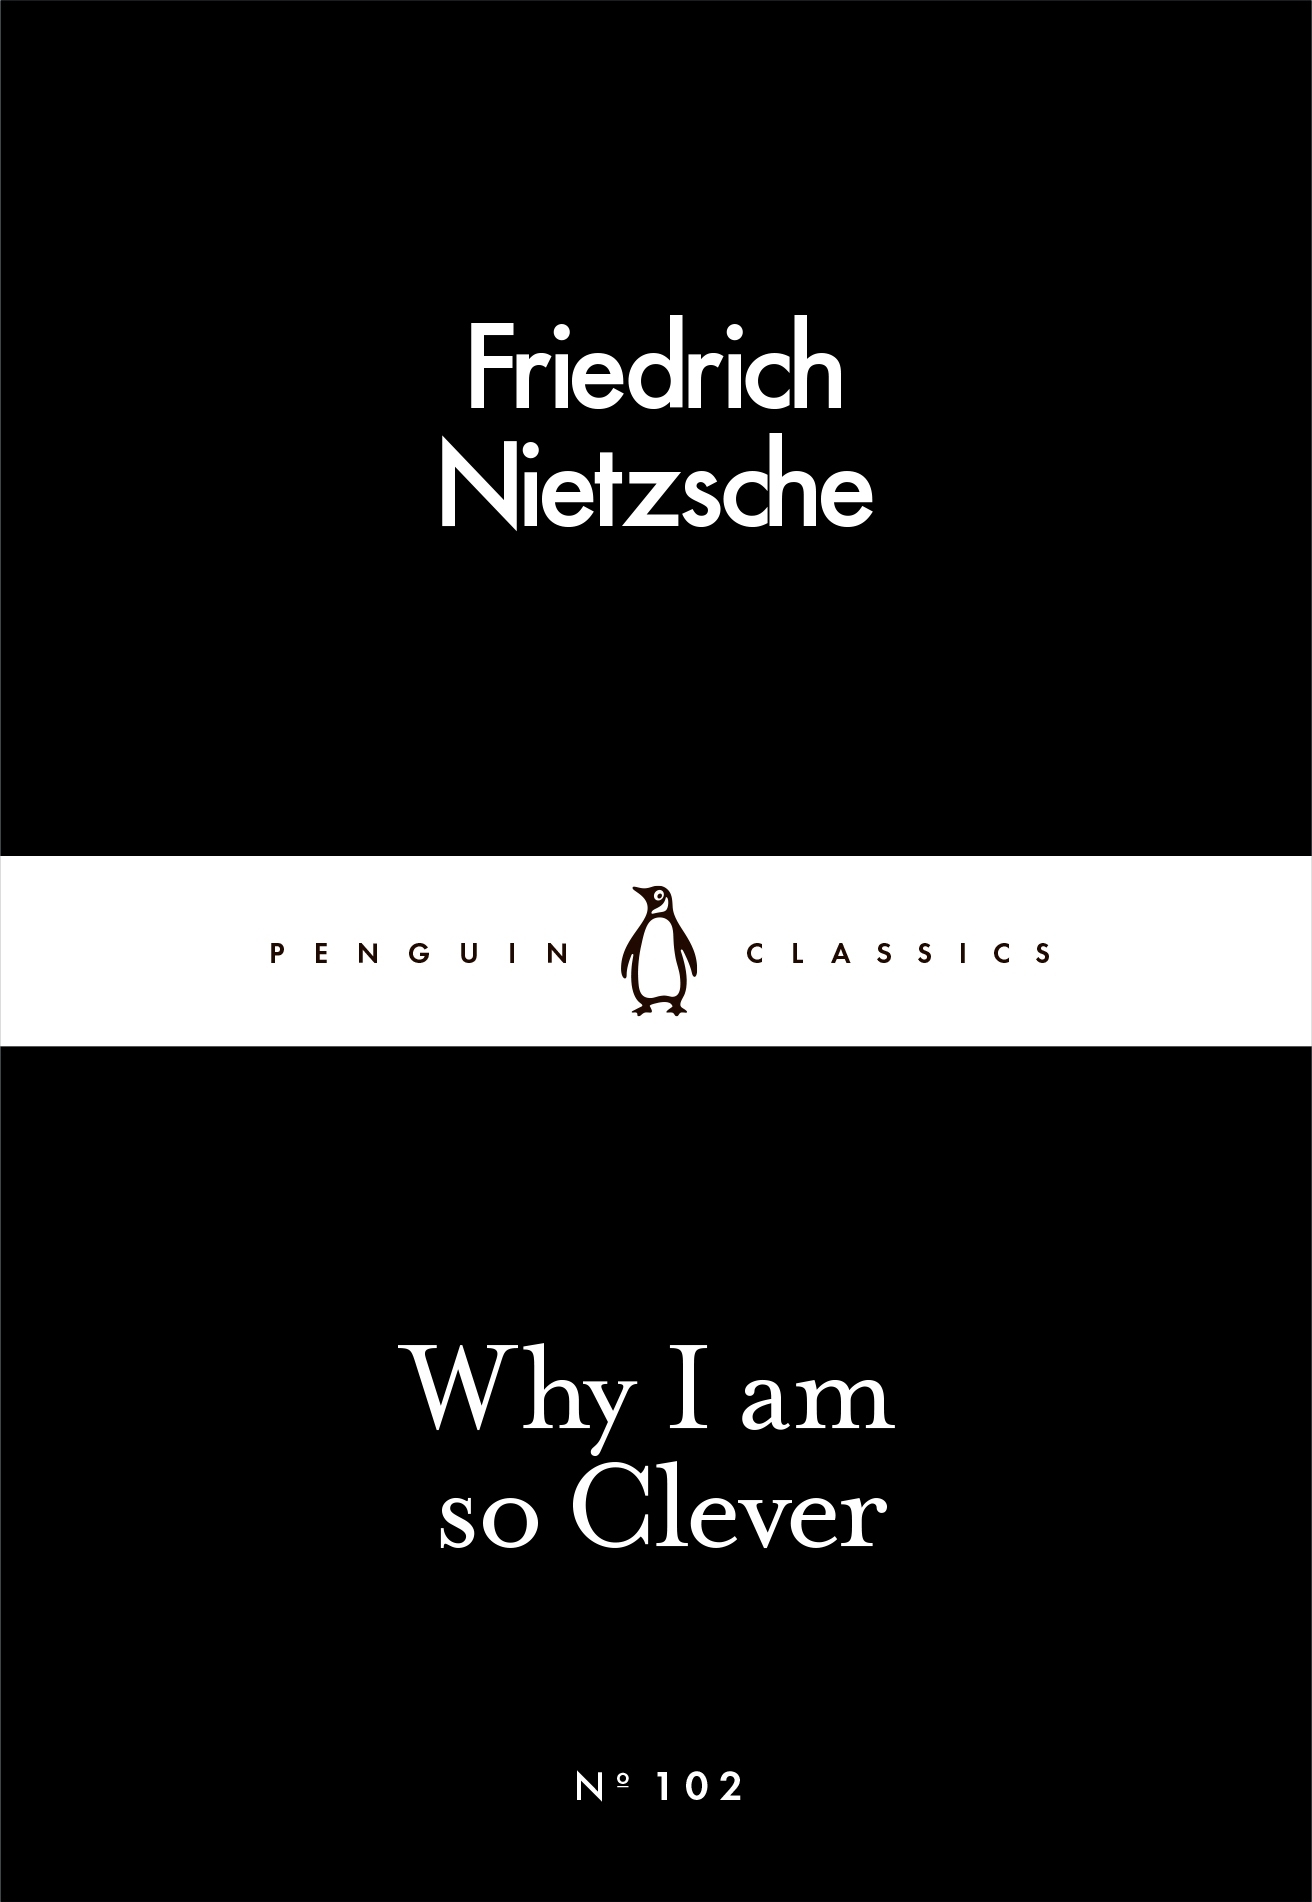 friedrich nietzsche penguin classics